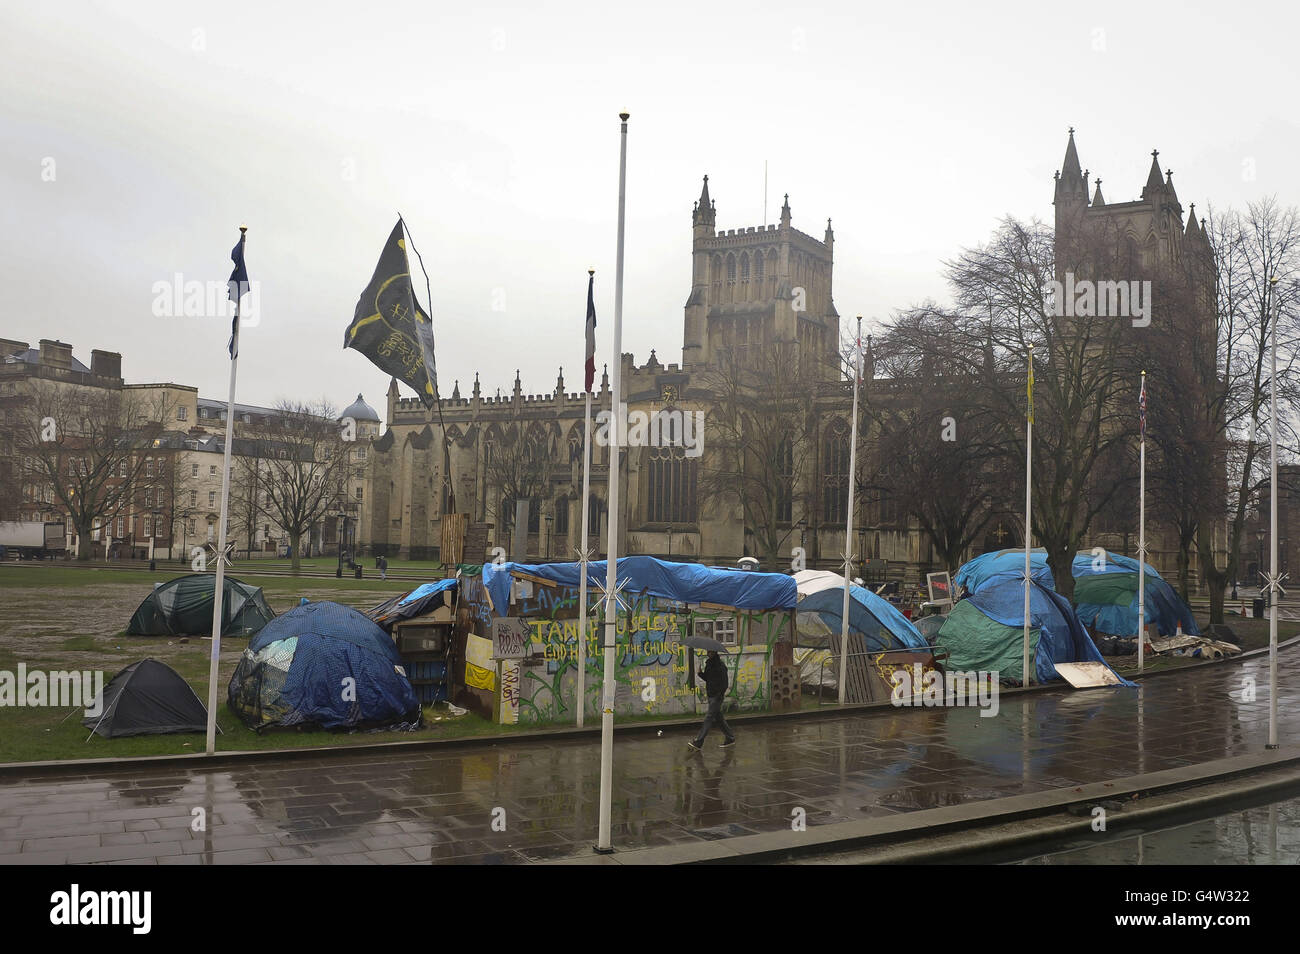 Un hombre pasa por las estructuras tarpaulin en College Green, Bristol, donde el movimiento ocupa Bristol ha sido acampada desde octubre de 2011. Foto de stock